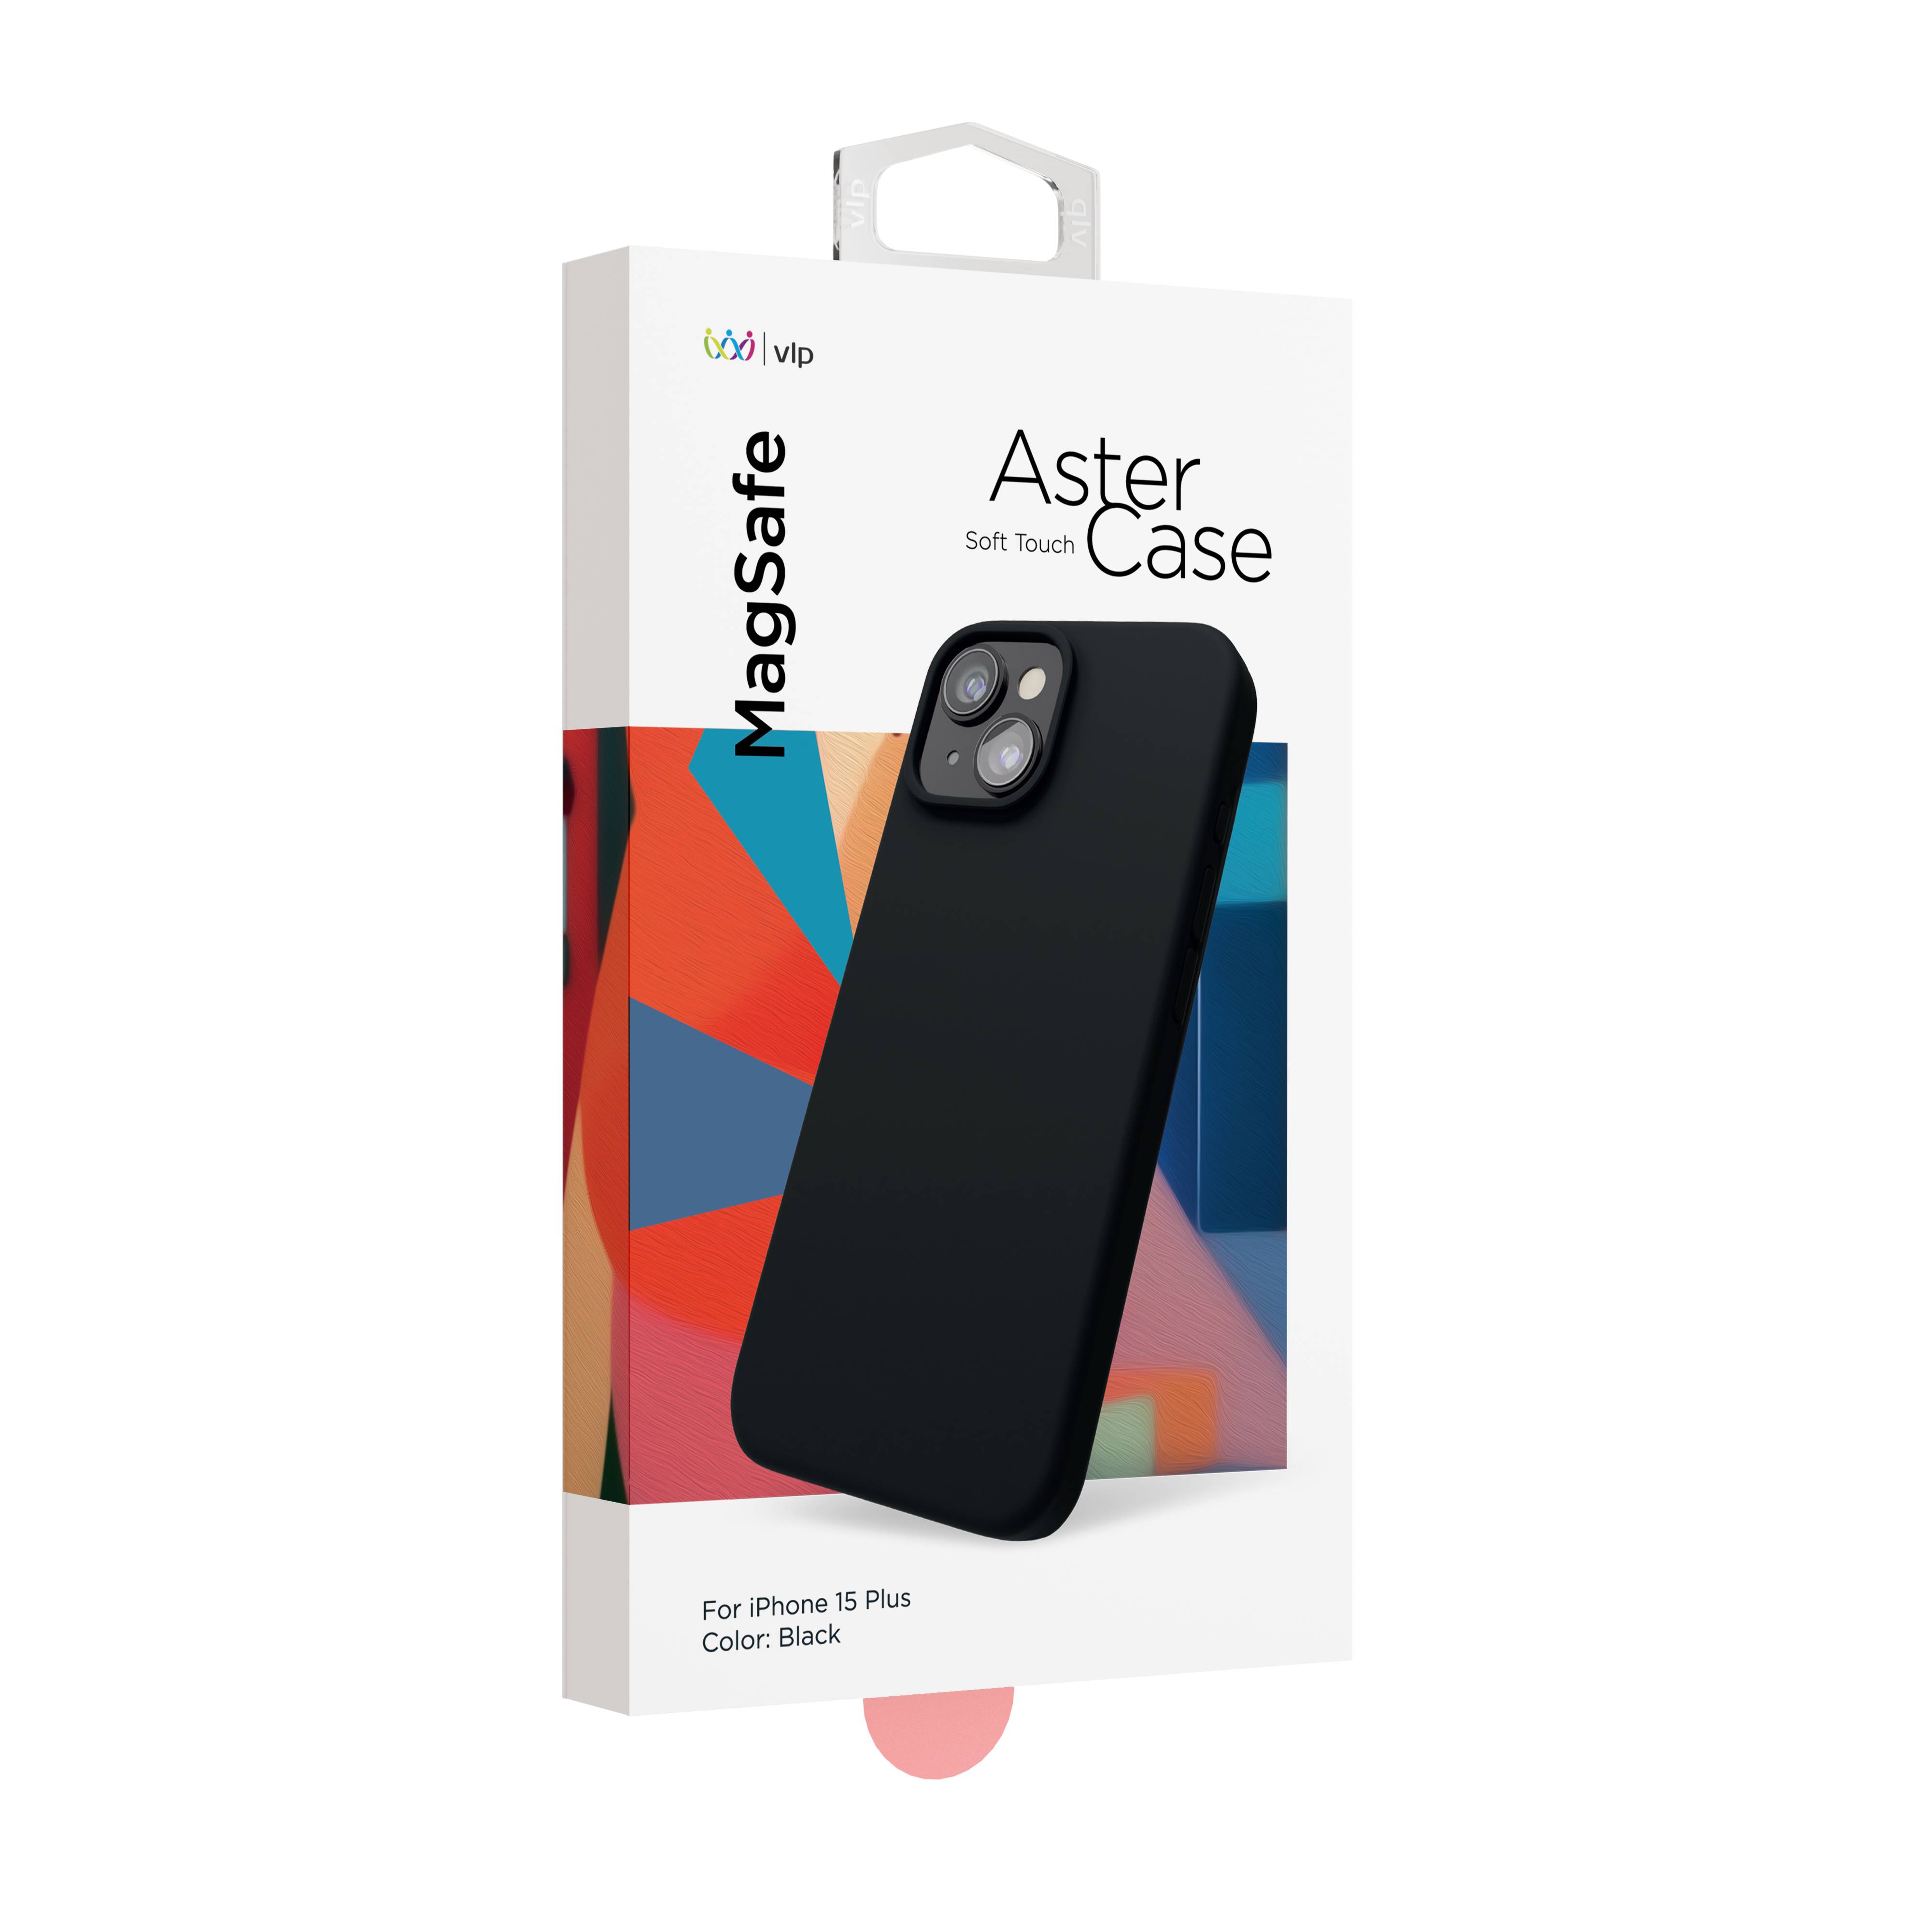 Фото — Чехол для смартфона "vlp" Aster Case с MagSafe для iPhone 15 Plus, черный